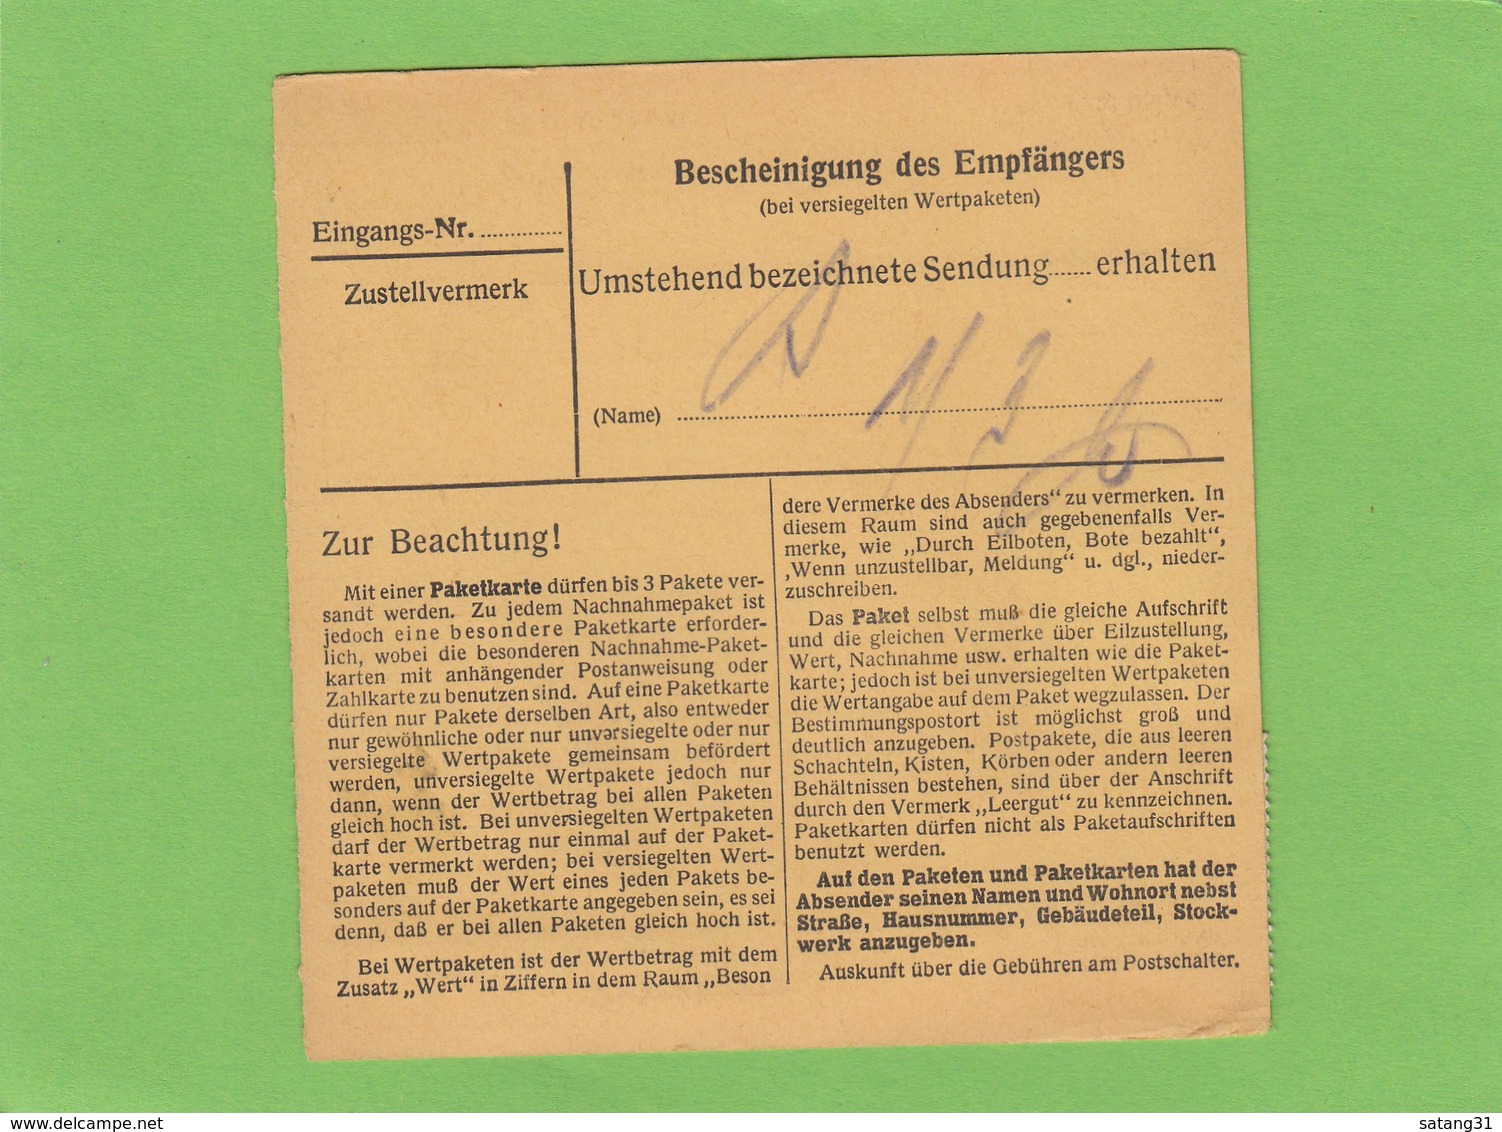 PAKETKARTE VON VIANDEN NACH LUXEMBURG-BONNEWEG MIT DER 22 FÜR MOSELLAND(PÄCKCHENLEITGEBIETE). - 1940-1944 Deutsche Besatzung